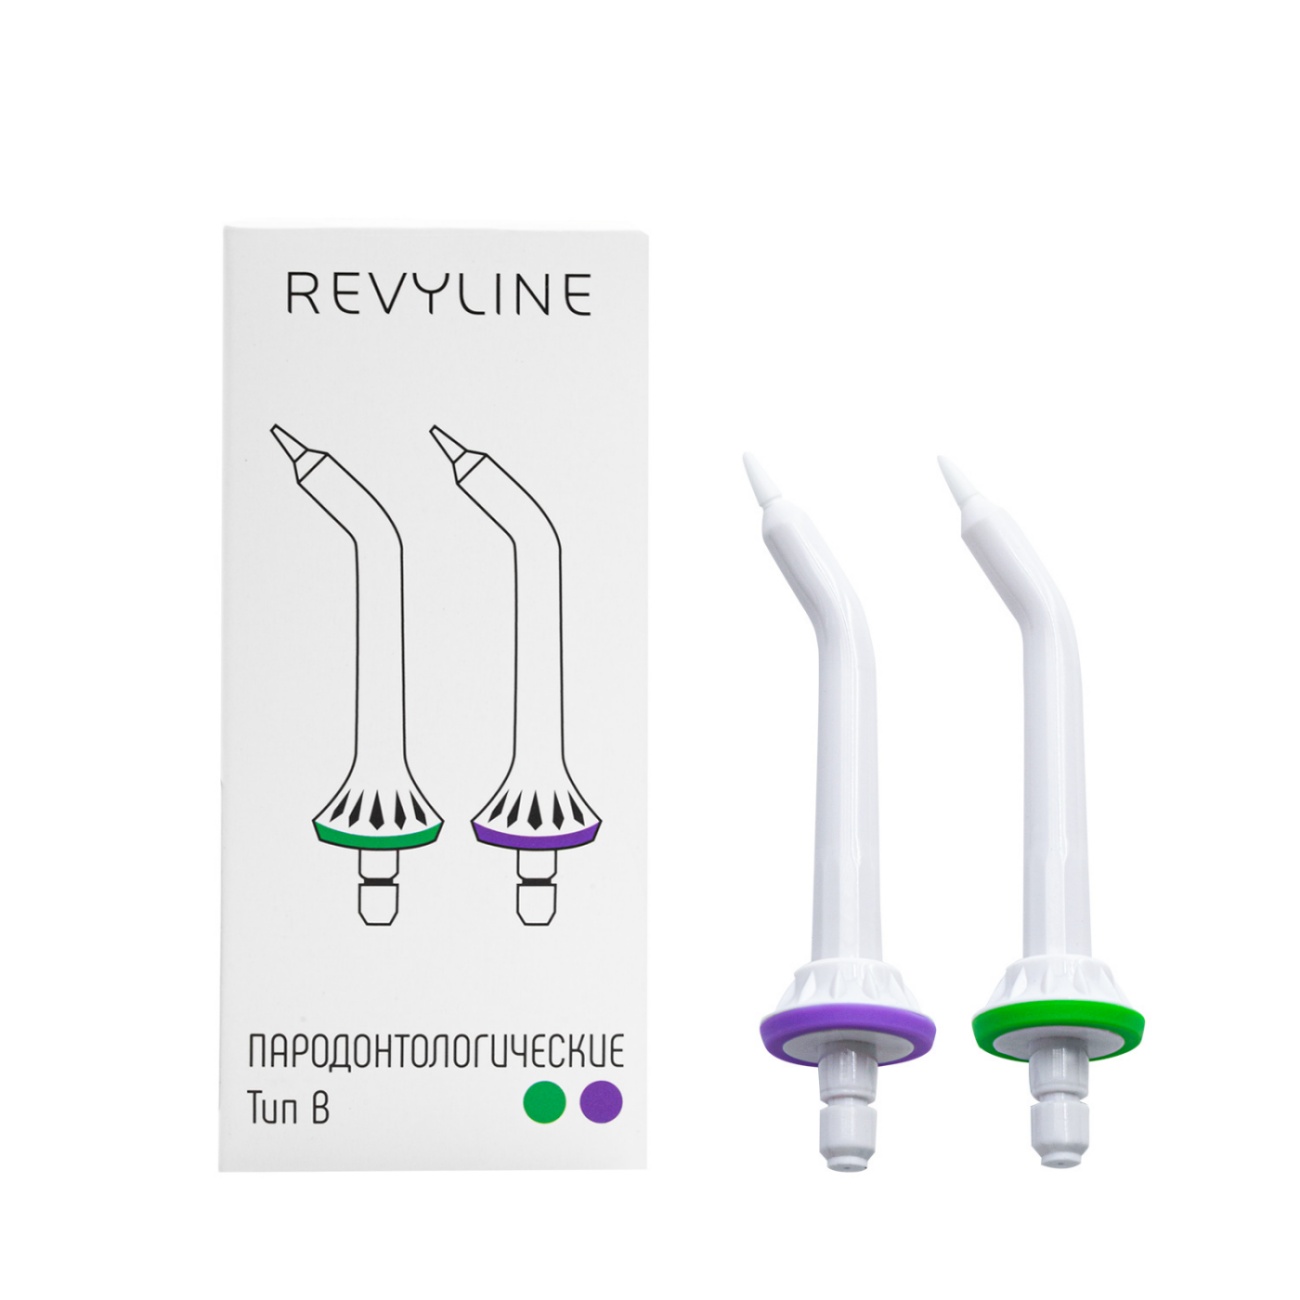 Насадки белые Revyline пародонтальные для ирригаторов Revyline RL 200/210/200XL